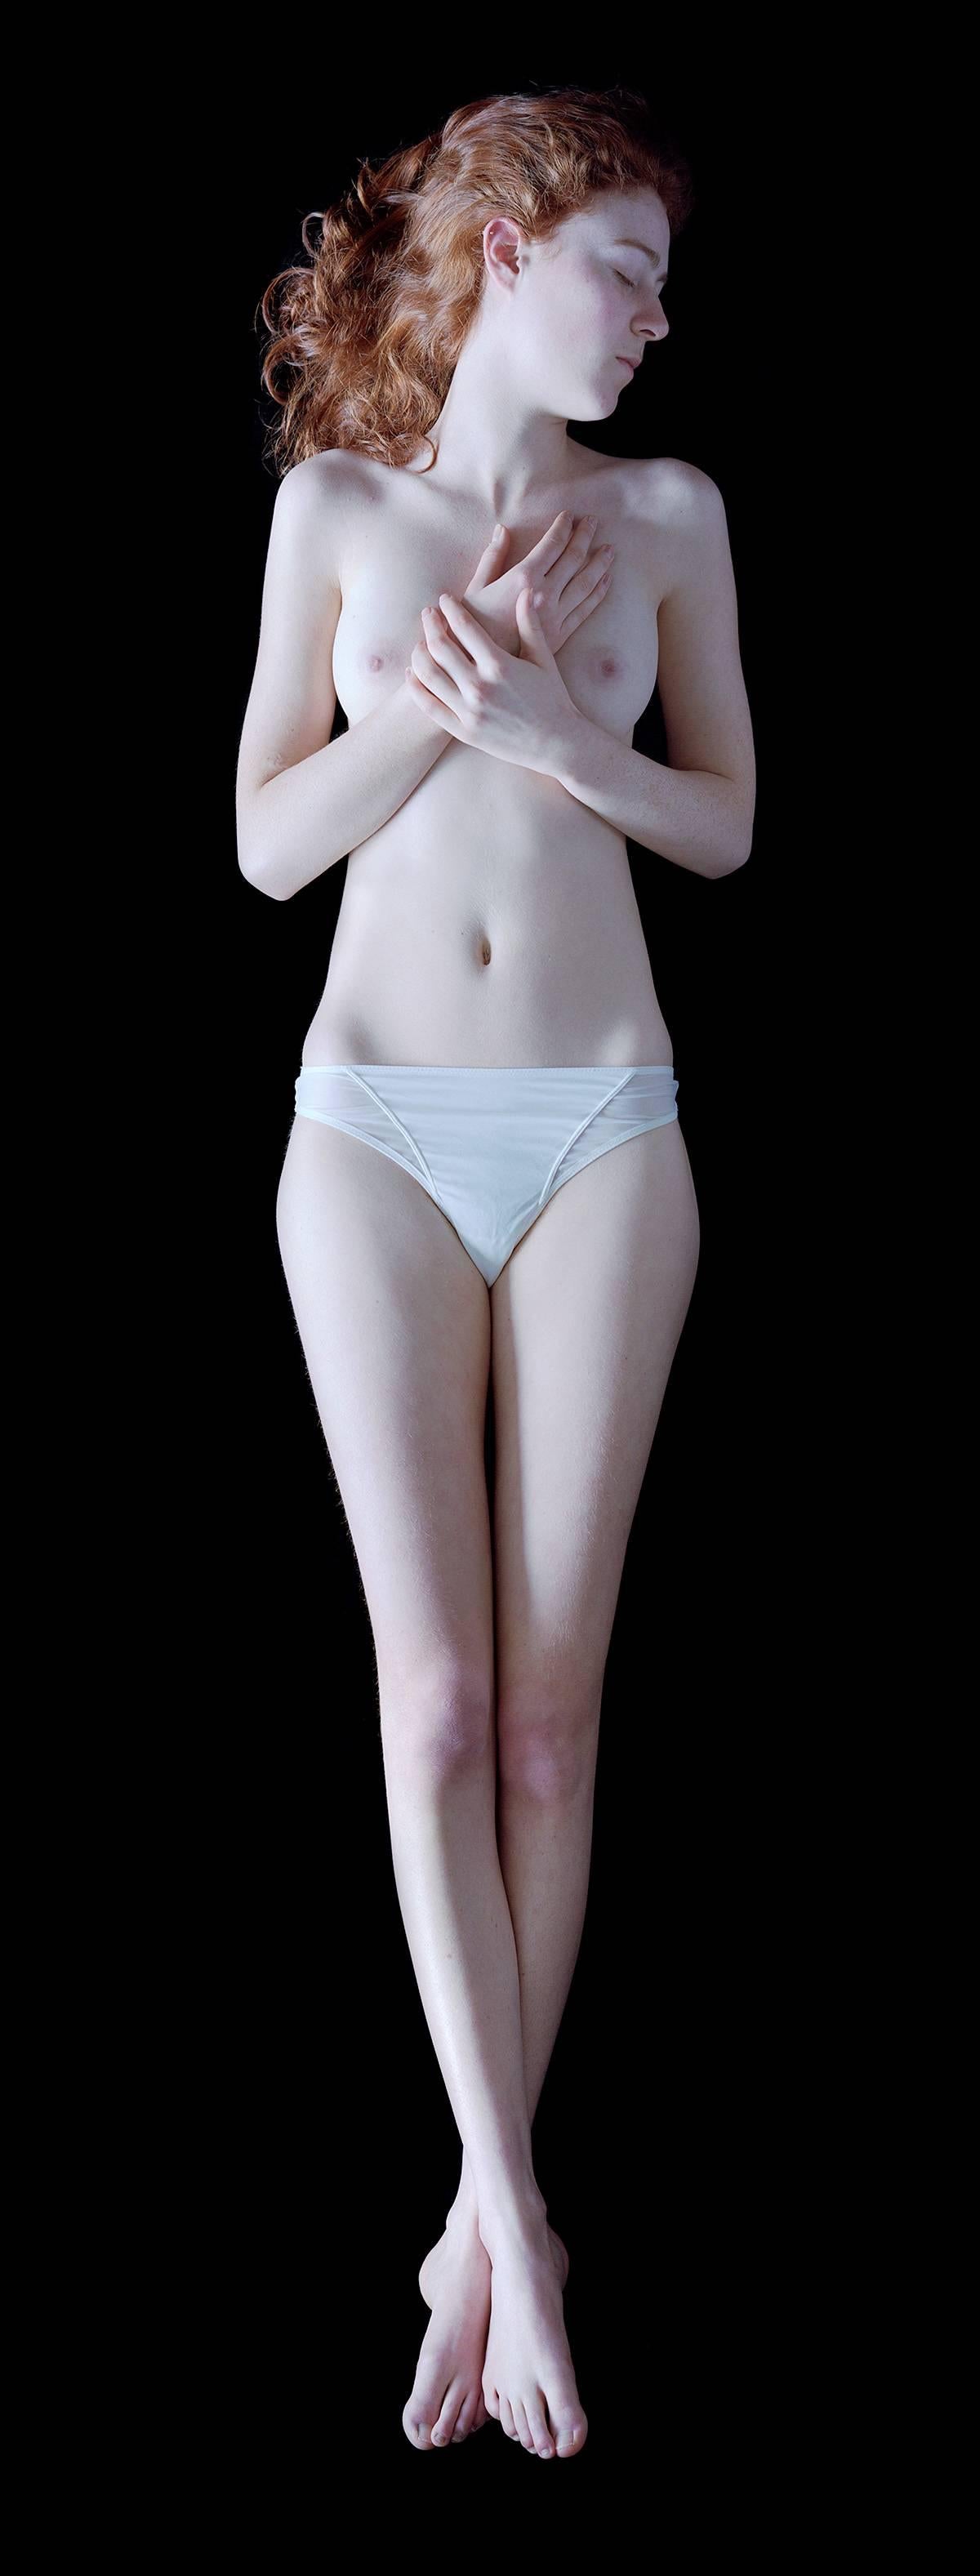 Carla van de Puttelaar Nude Photograph - 2008_24 – The Cranach Series